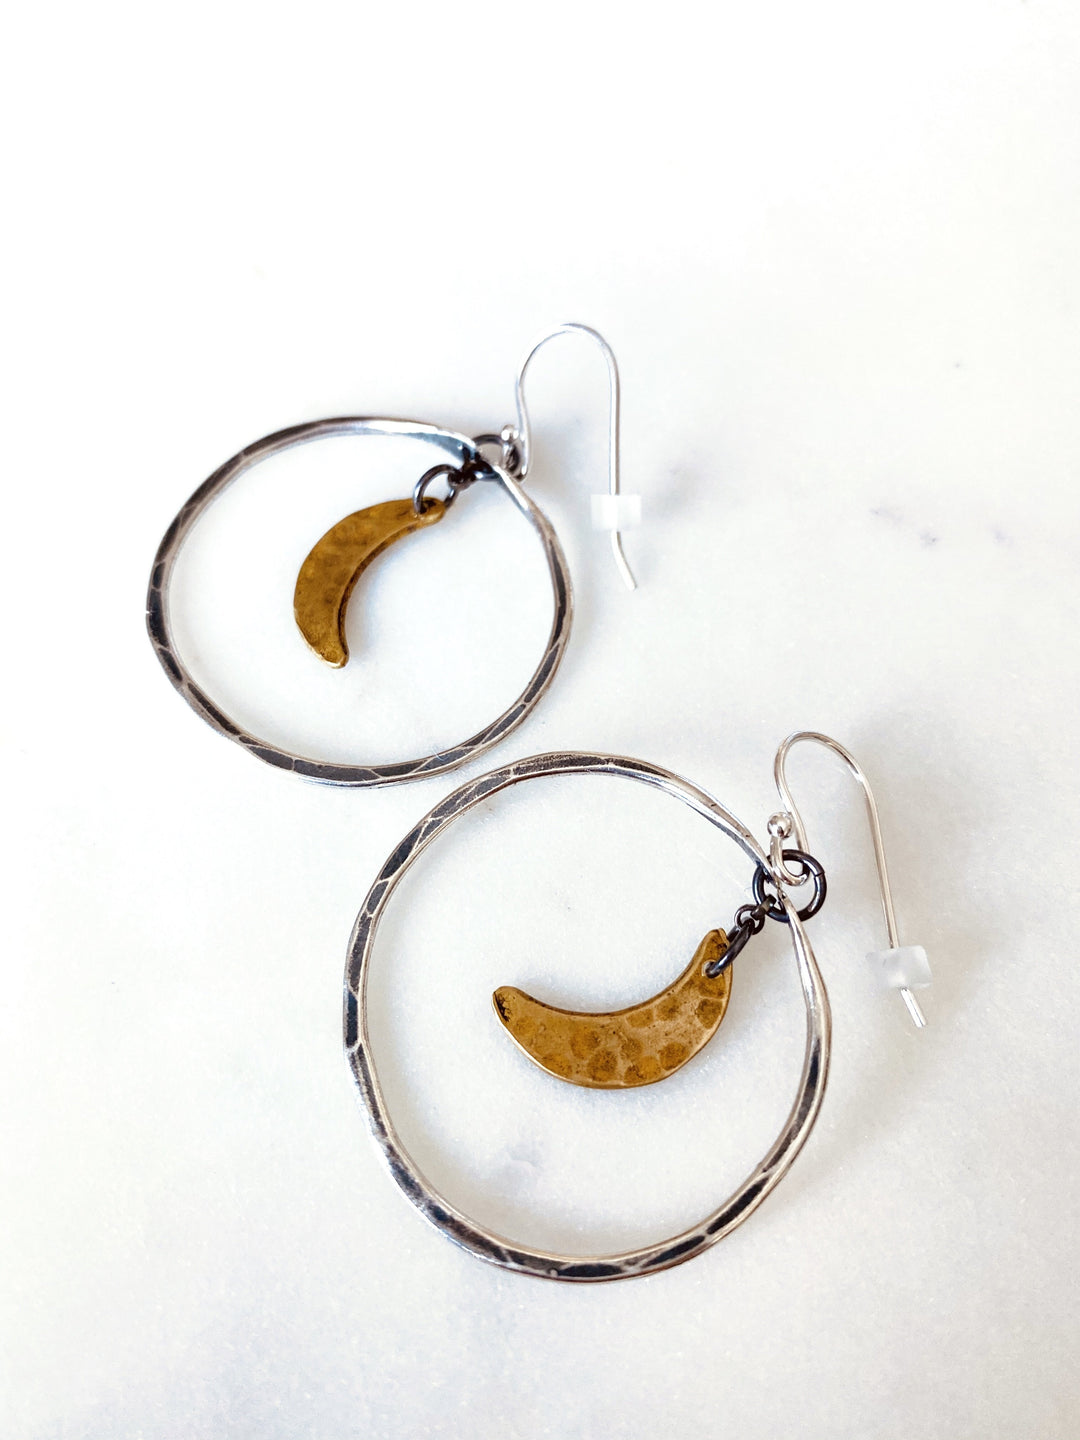 Moon Hoop Earrings - Silver Hoops, Brass Moons